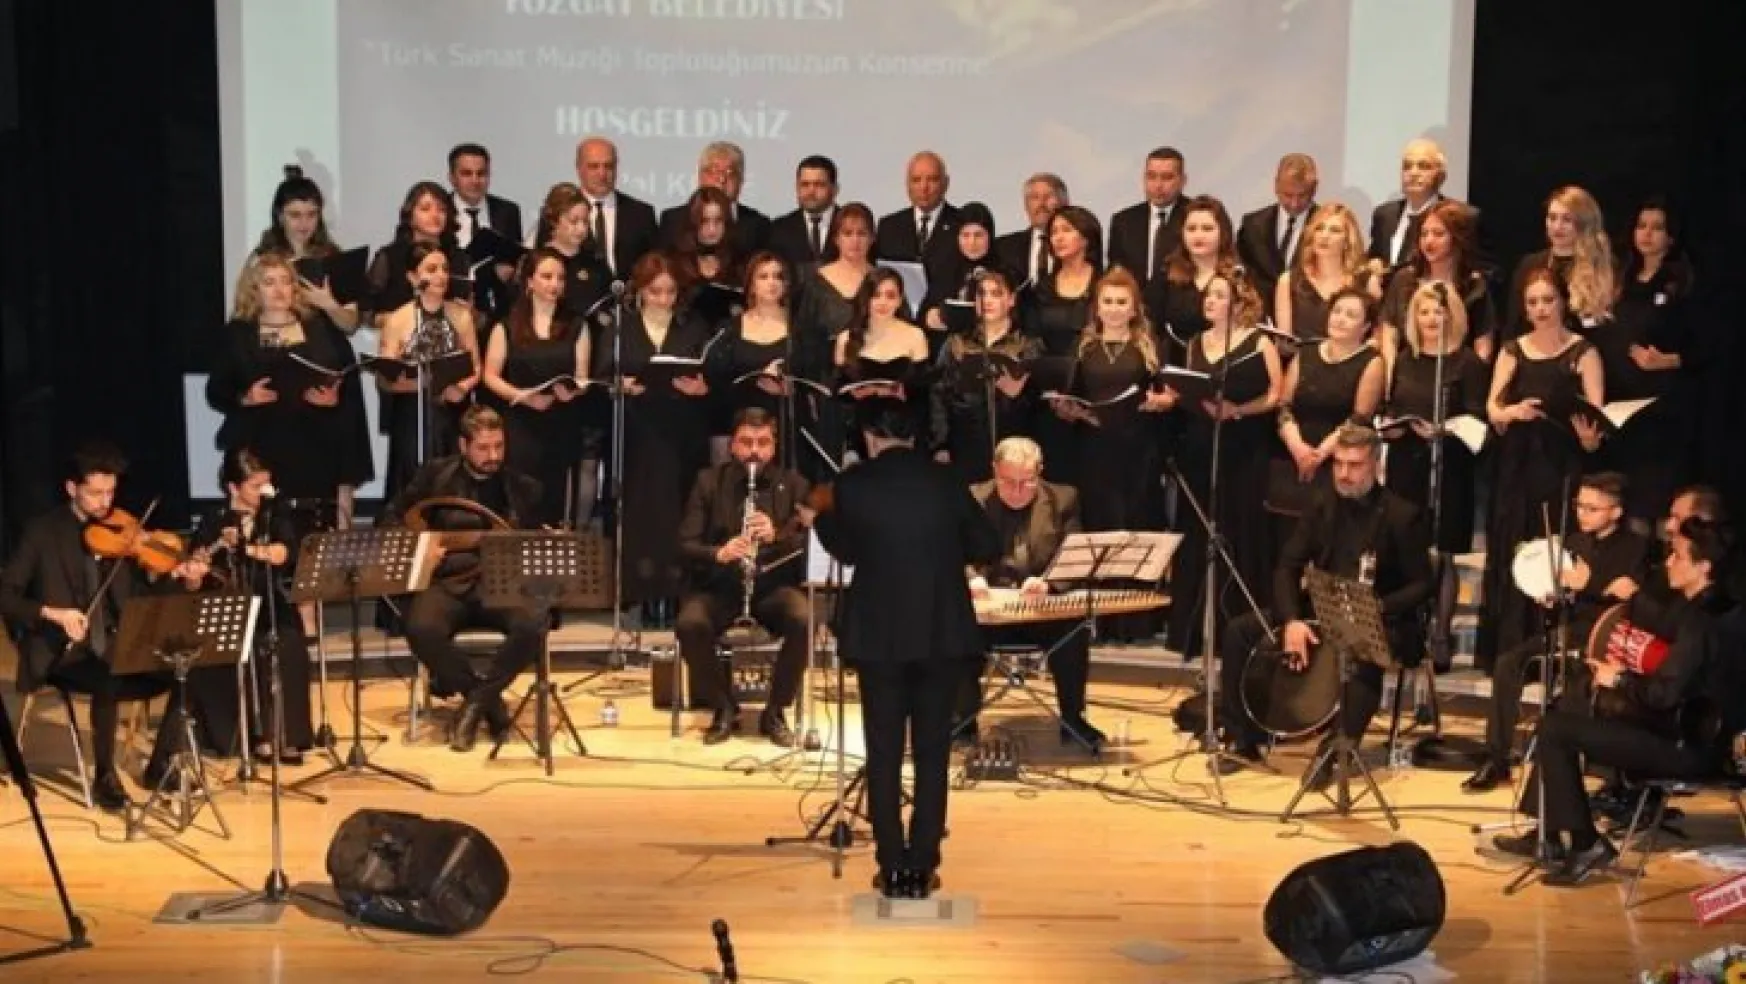 Yozgat Belediyesi Türk Sanat Müziği Topluluğu kulakların pasını sildi